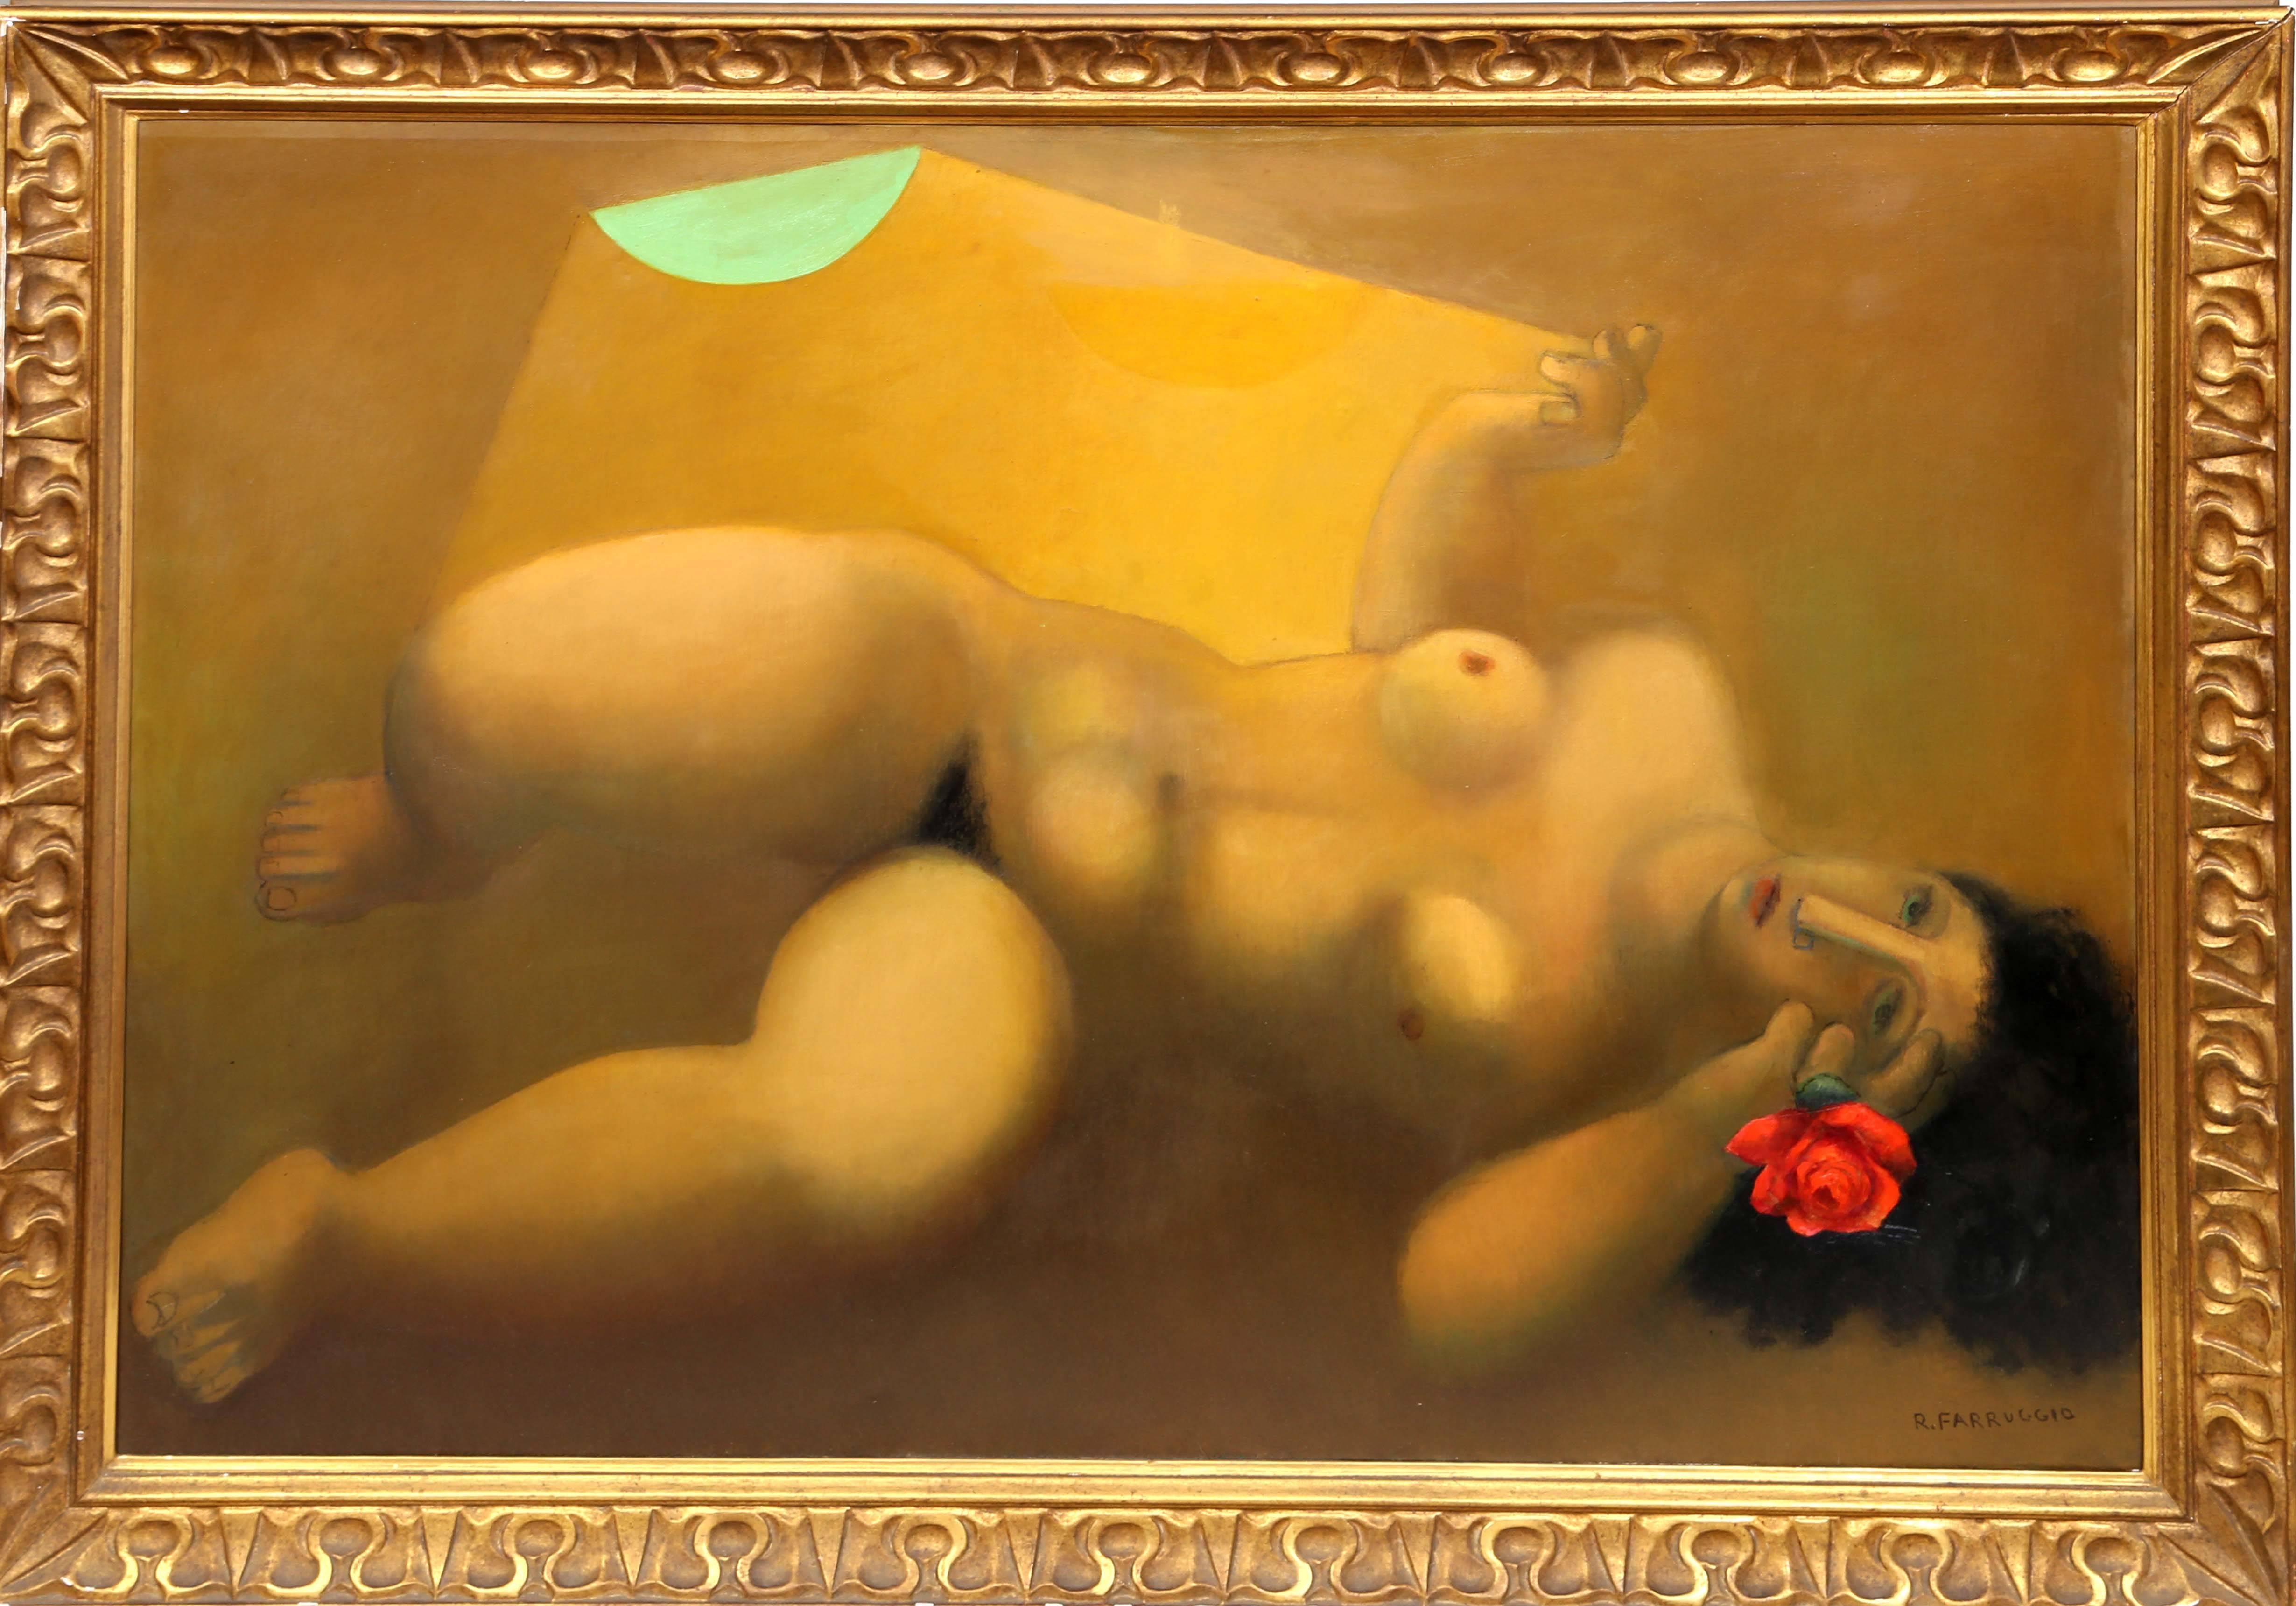 Künstler:  Remo Farruggio, Italiener/Amerikaner (1904 - 1981)
Titel:  Liegender Akt mit Rose
Jahr:  um 1970 
Medium:  Öl auf Leinwand, signiert v.l.n.r.
Größe:  37.5  x 52.25 in. (95.25  x 132.72 cm)
Rahmen: 43,5 x 58,5 Zoll